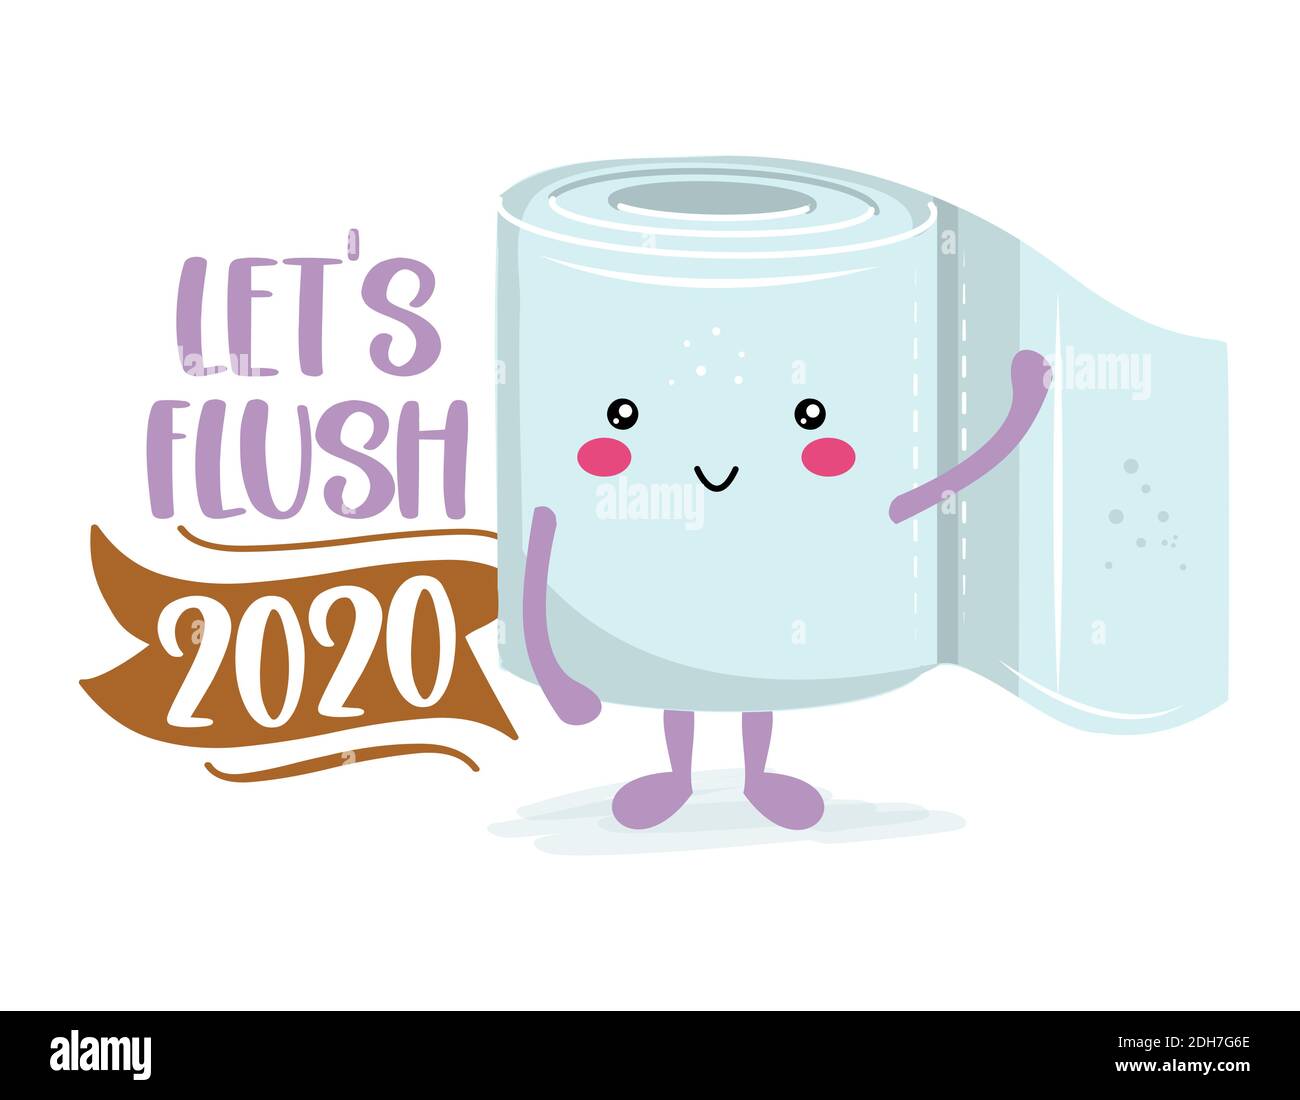 Let's Flush 2020 - Funny carta igienica in stile kawaii. Coronavirus covid-19 divertente carattere Xmas biglietti d'auguri, inviti. Per un brutto sudore natalizio Illustrazione Vettoriale